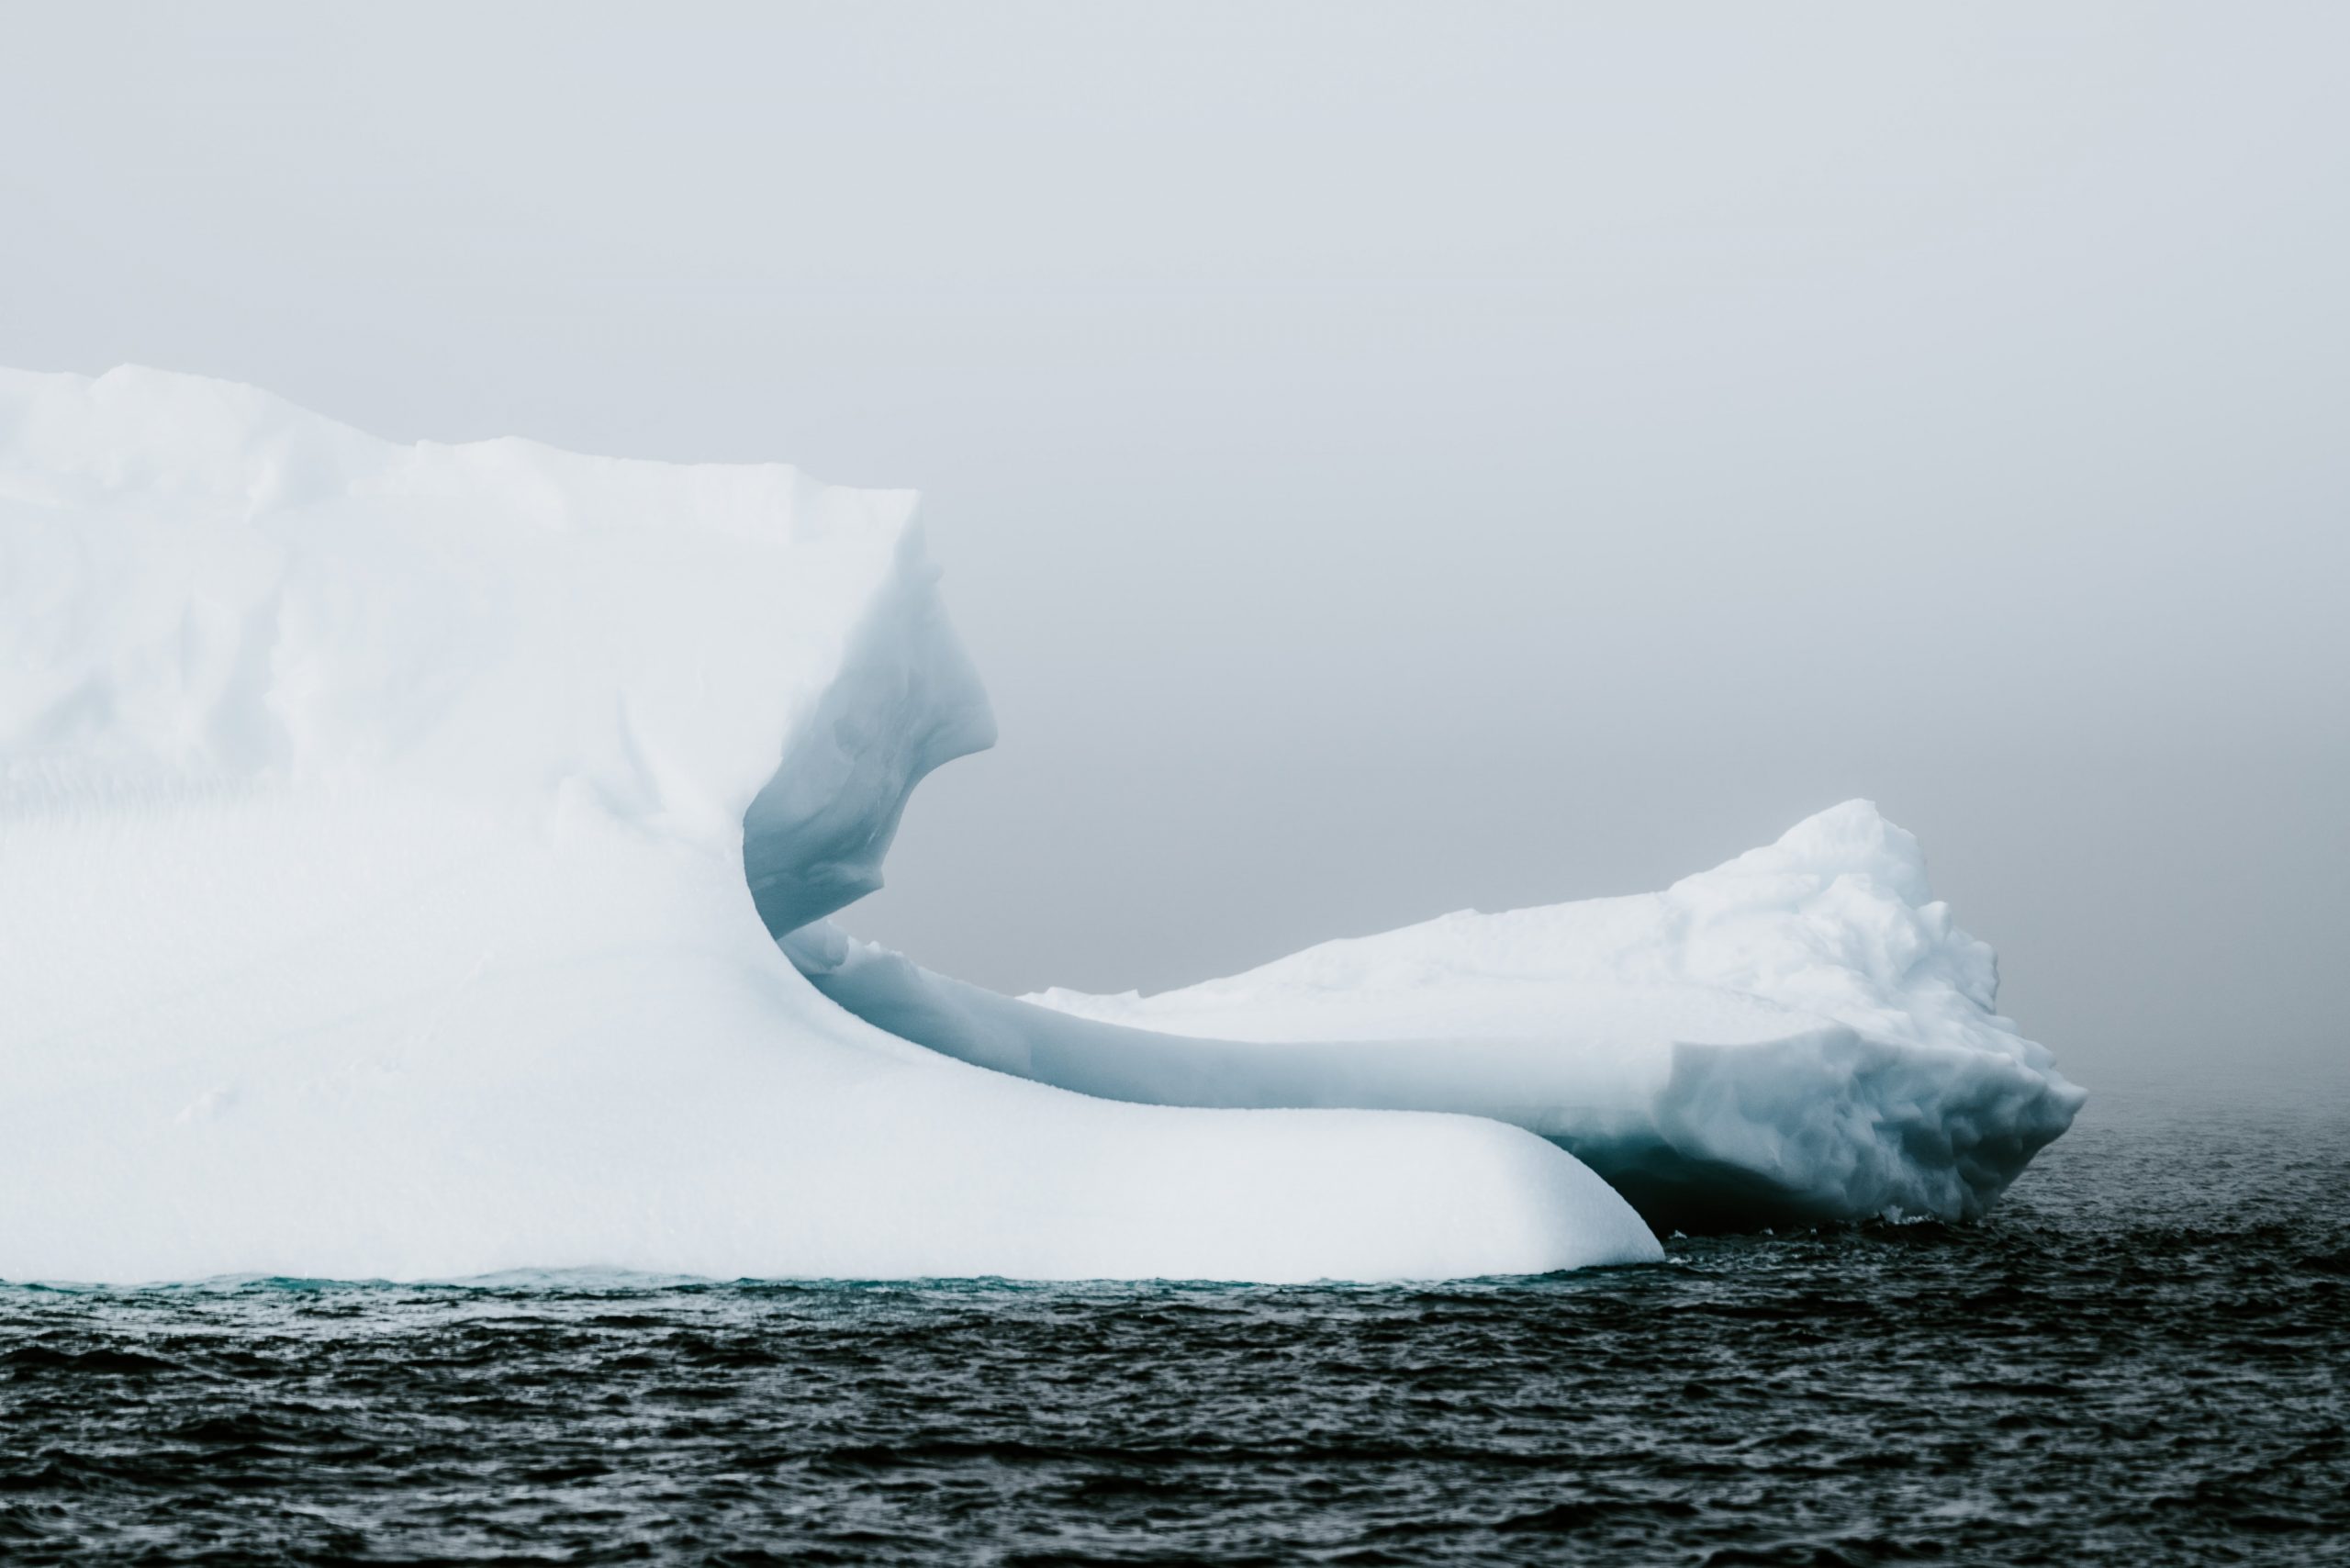 Une photographie de deux grands icebergs blancs reposant dans un océan froid et bleu foncé. Le ciel est d'un gris brumeux.